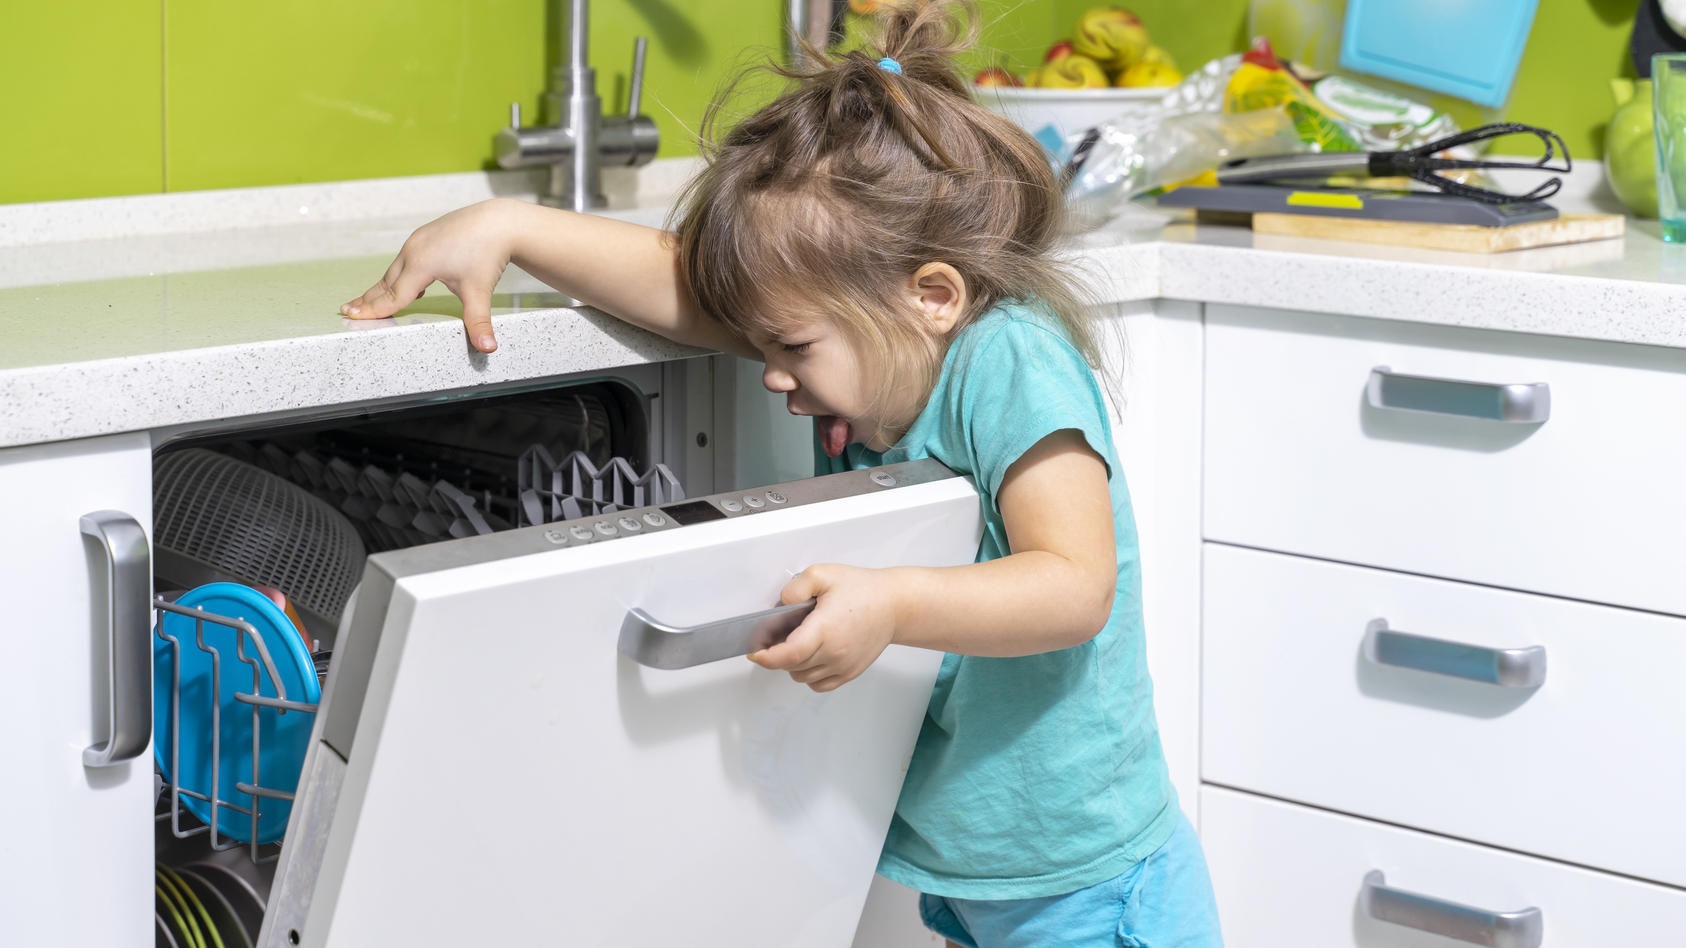 Spätestens wenn die Spülmaschine stinkt, empfiehlt sich eine gründliche Reinigung.